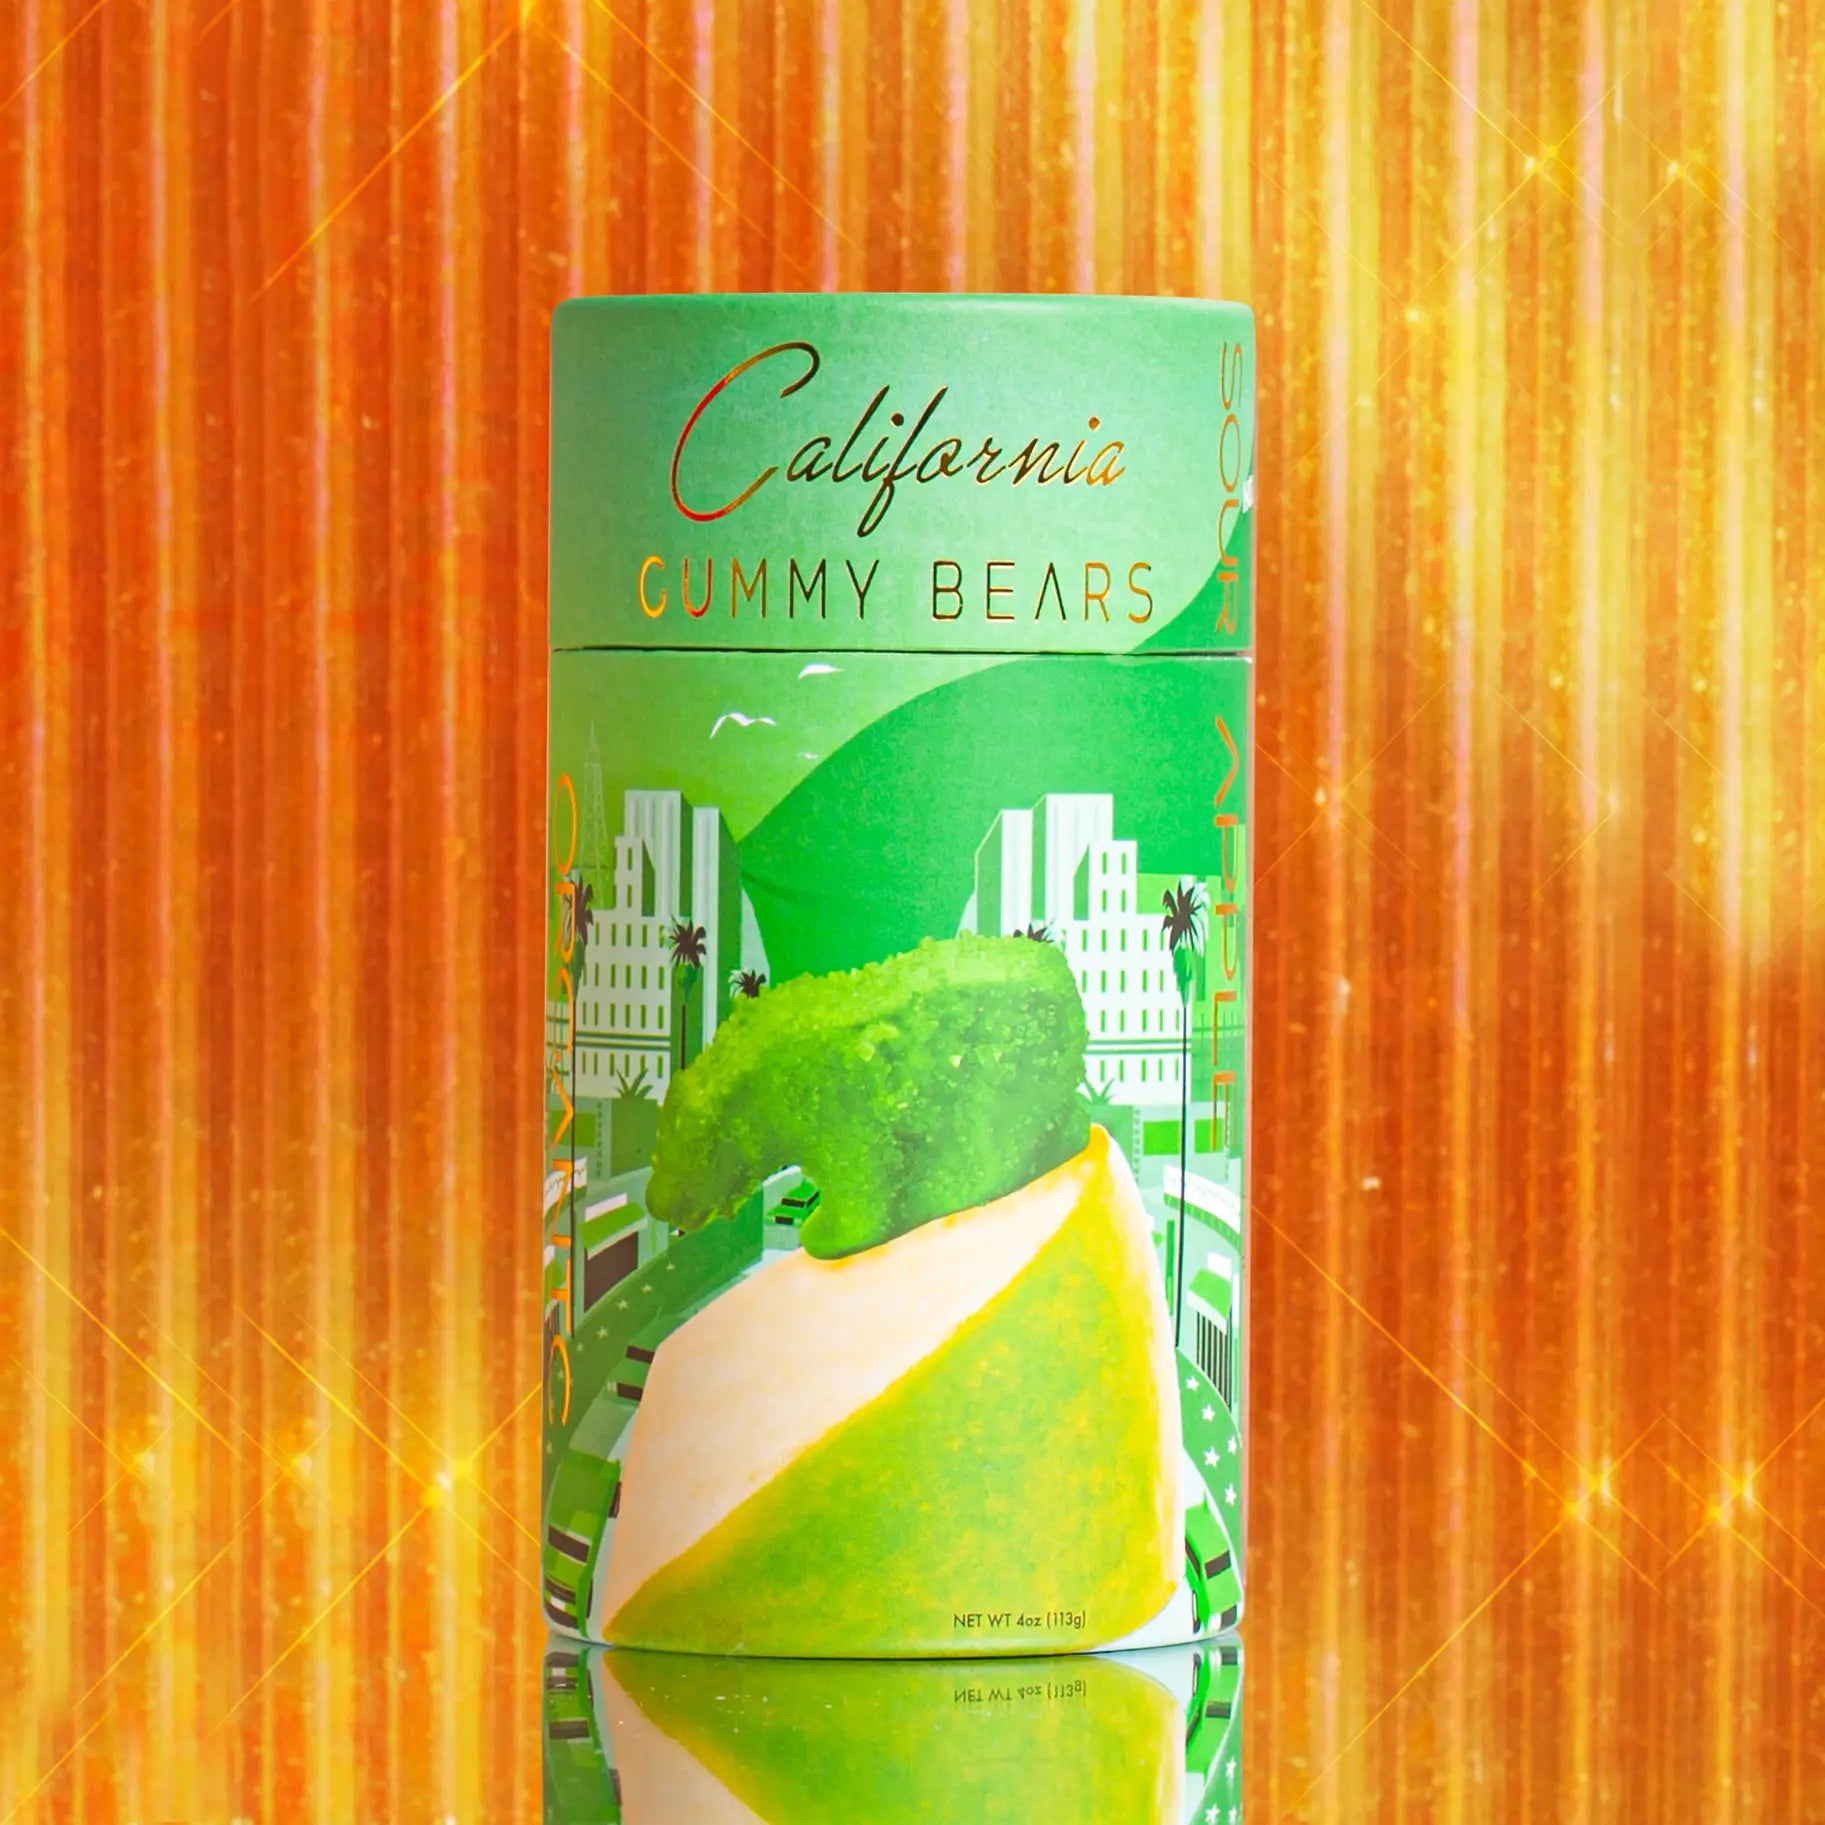 Hollywood Sour Apple Gummy Bears by California Gummy Bears. Vegan Gummy Bears. Organic Gummy Bears. Corn Syrup Free Gummy Bears. Sour Apple Gluten Free Gummy Bears.